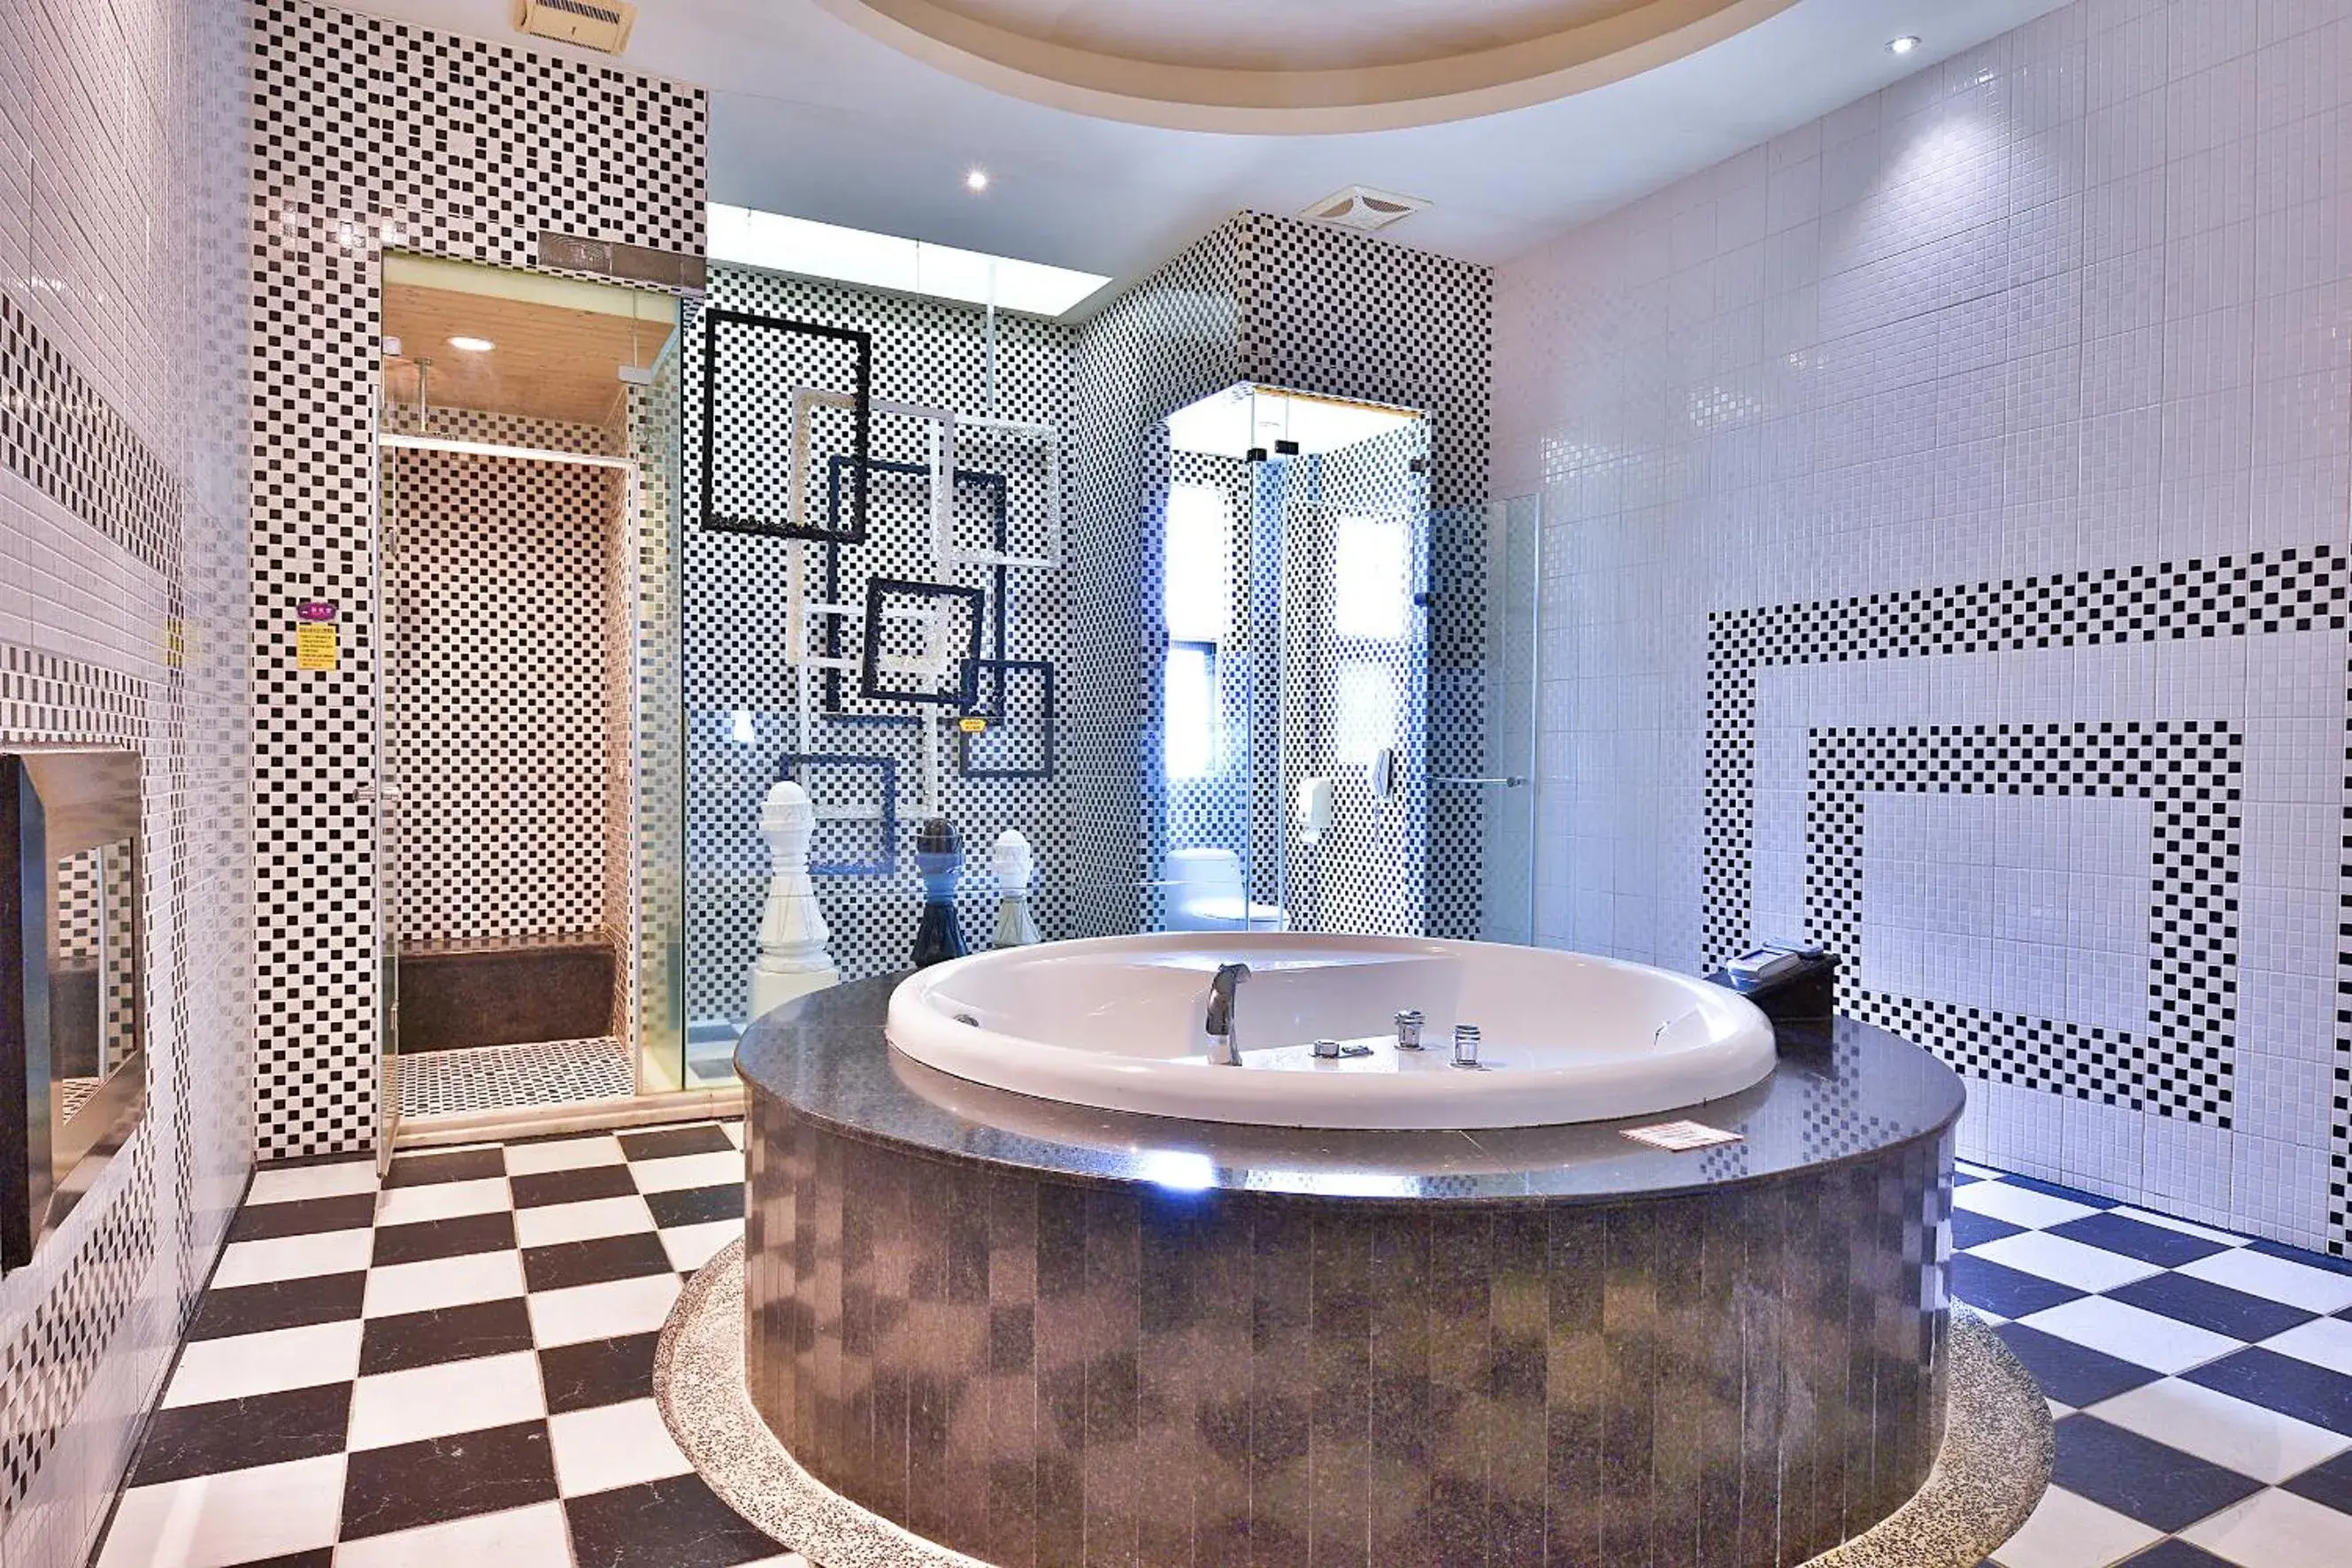 Steam room, Bathroom in Vogue Boutigue Motel